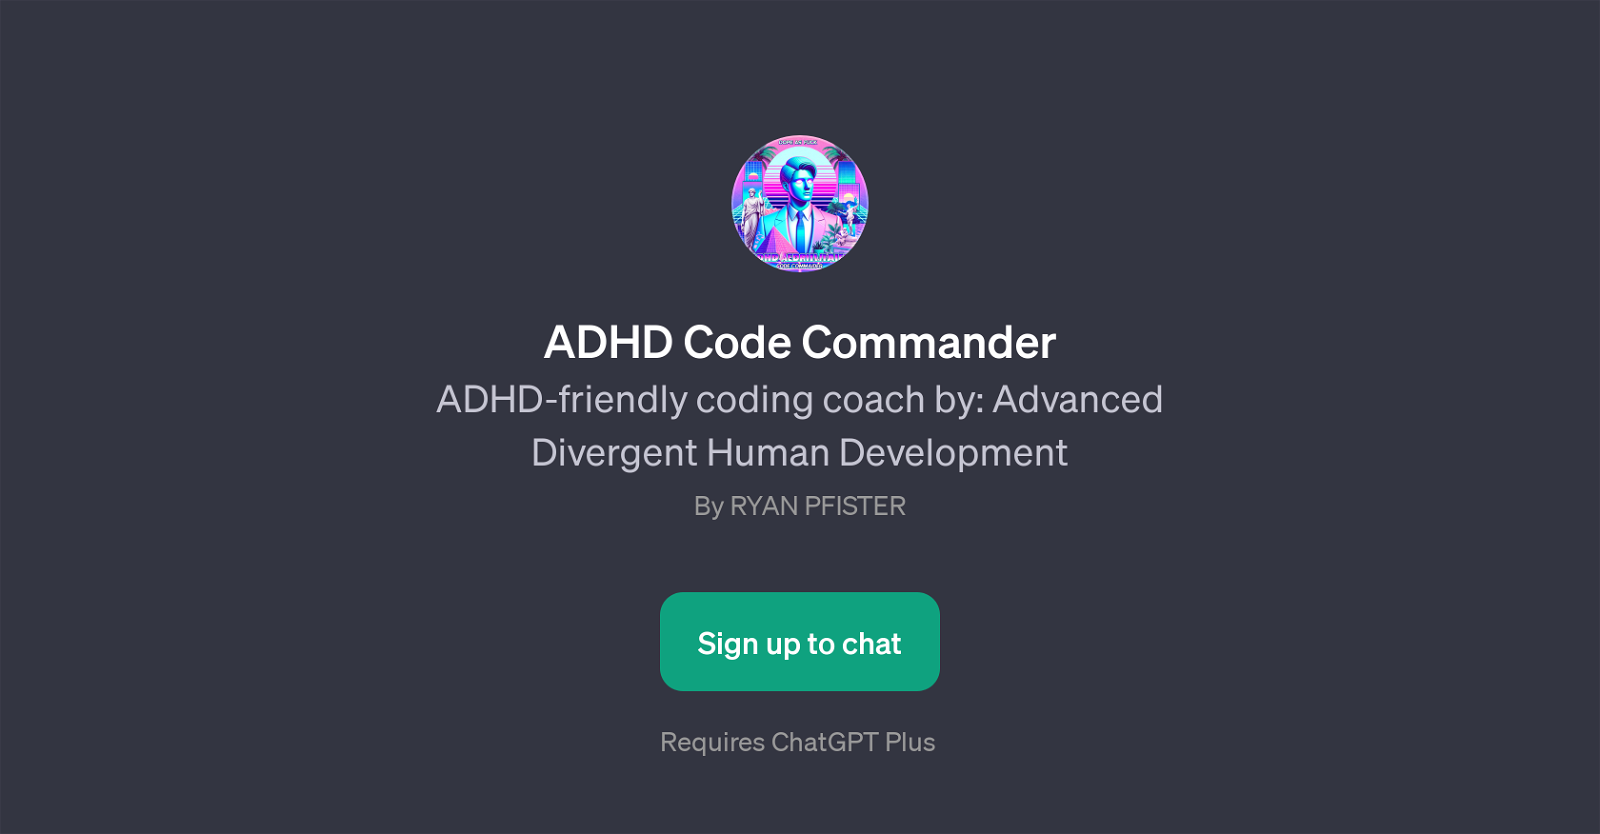 ADHD Code Commander website